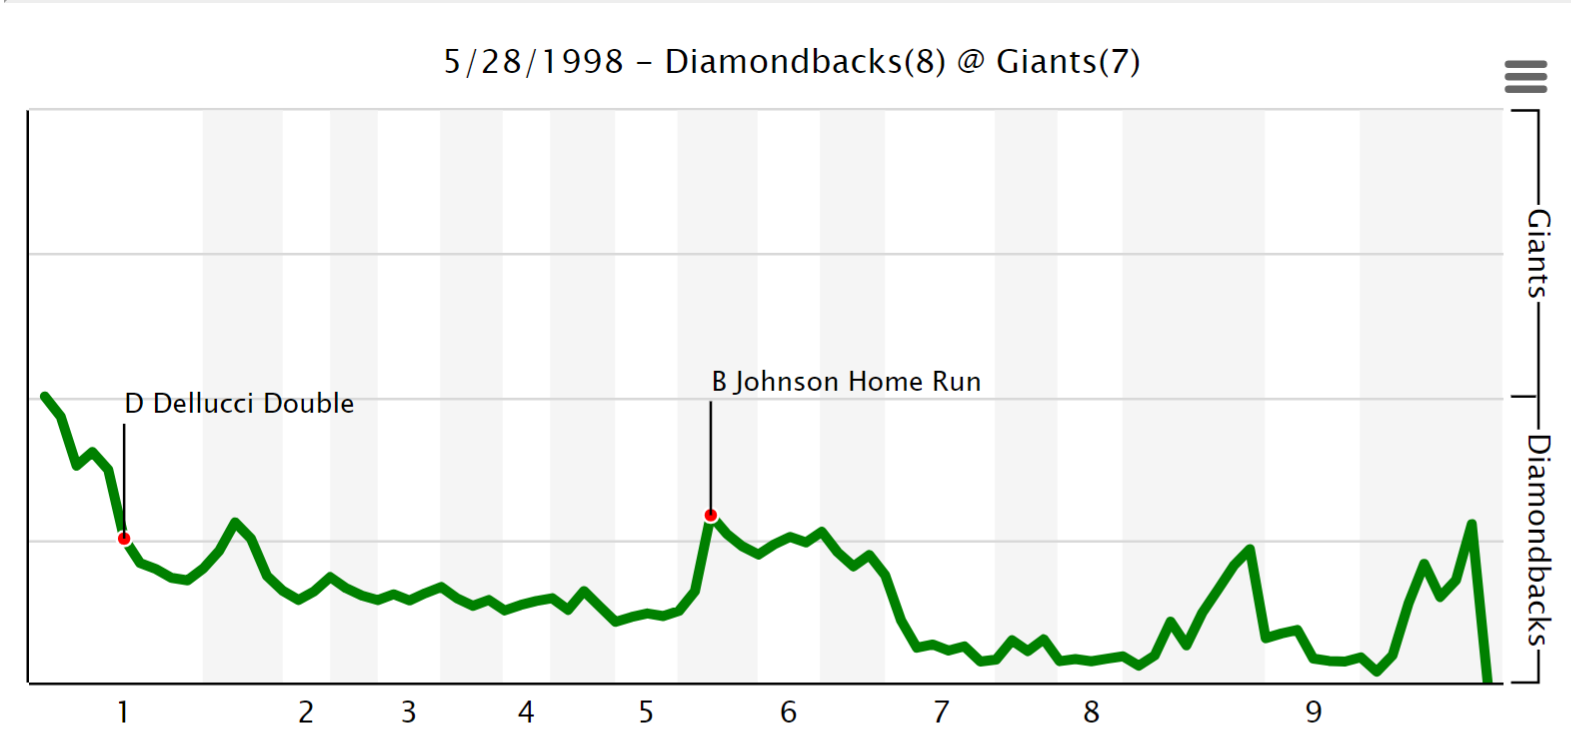 Win probability, Diamondbacks @ Giants, 5/28/1998